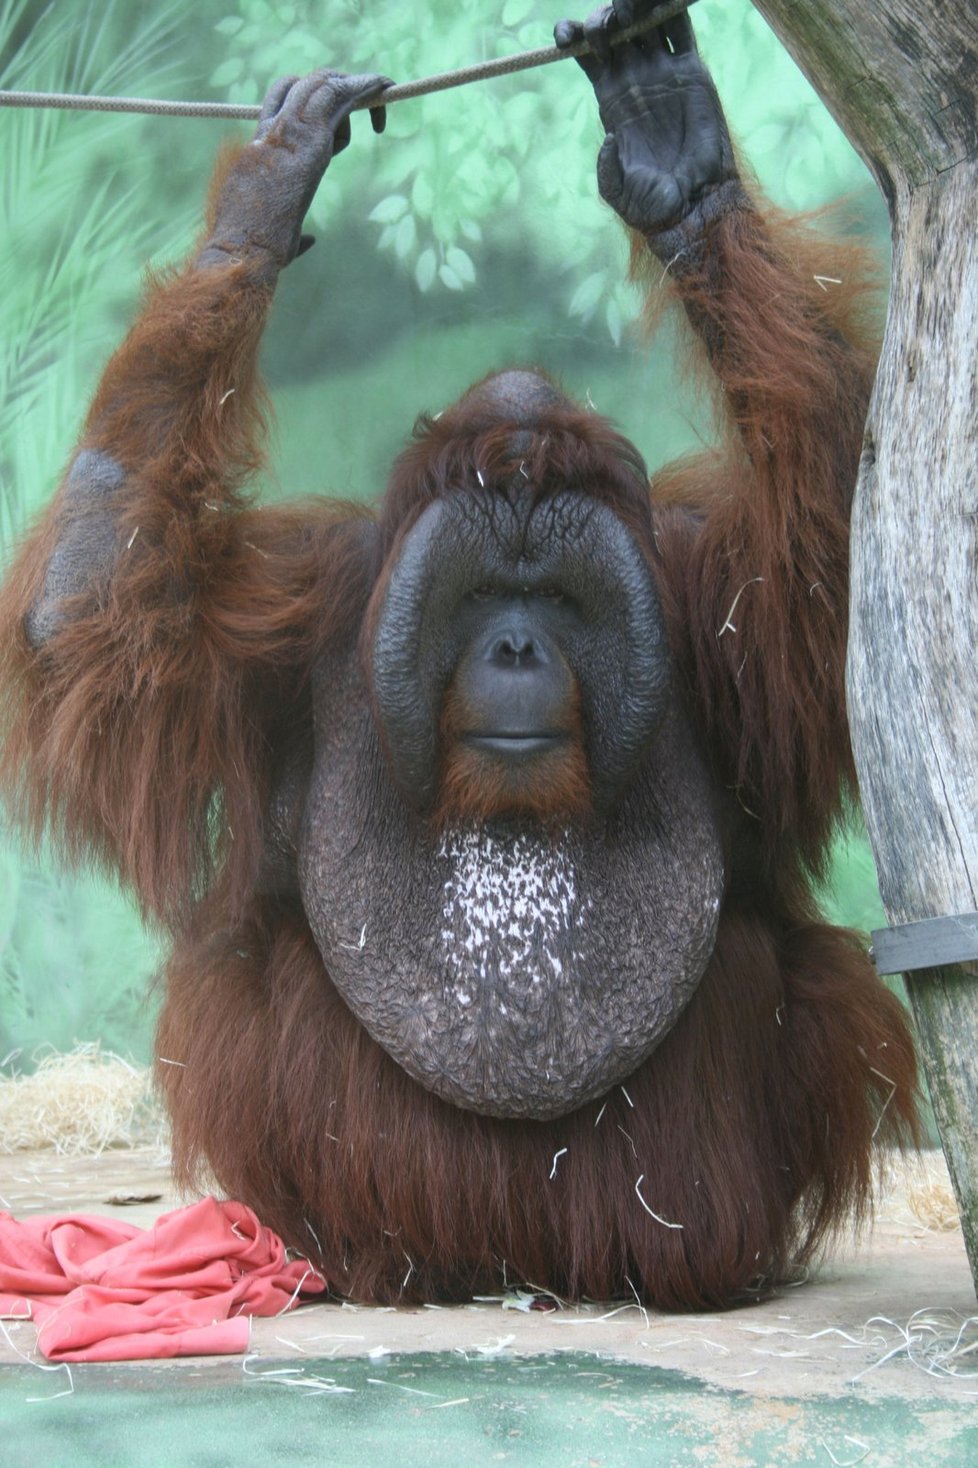 Oba druhy orangutanů bornejských i sumaterských patří ke kriticky ohroženým zvířecím druhům ve volné přirodě. (ilustrační foto)